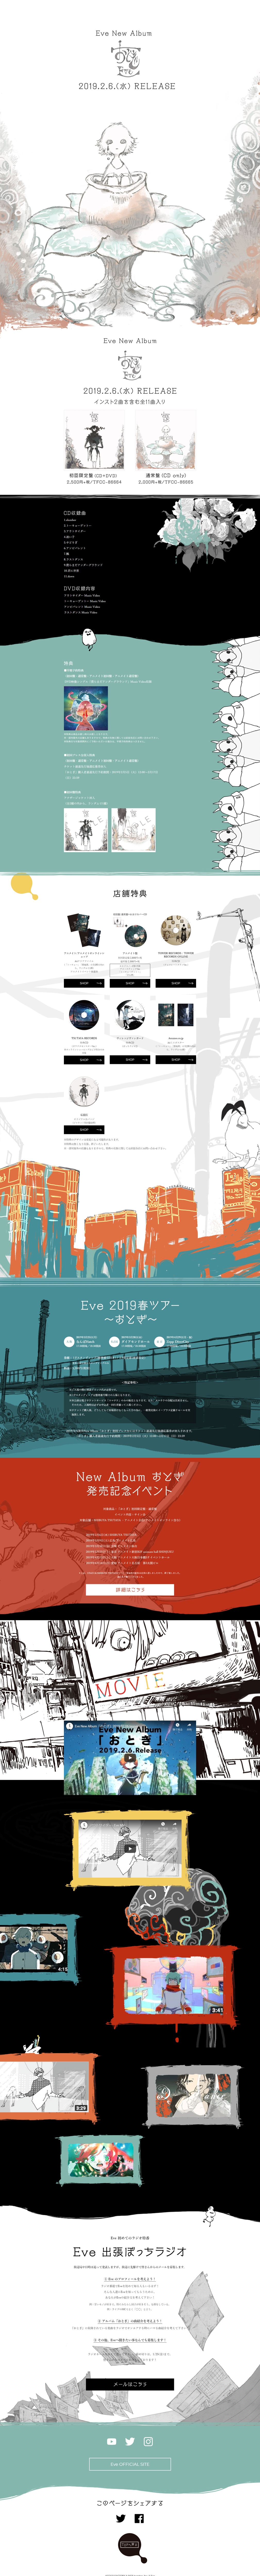 Eve New Album「おとぎ」